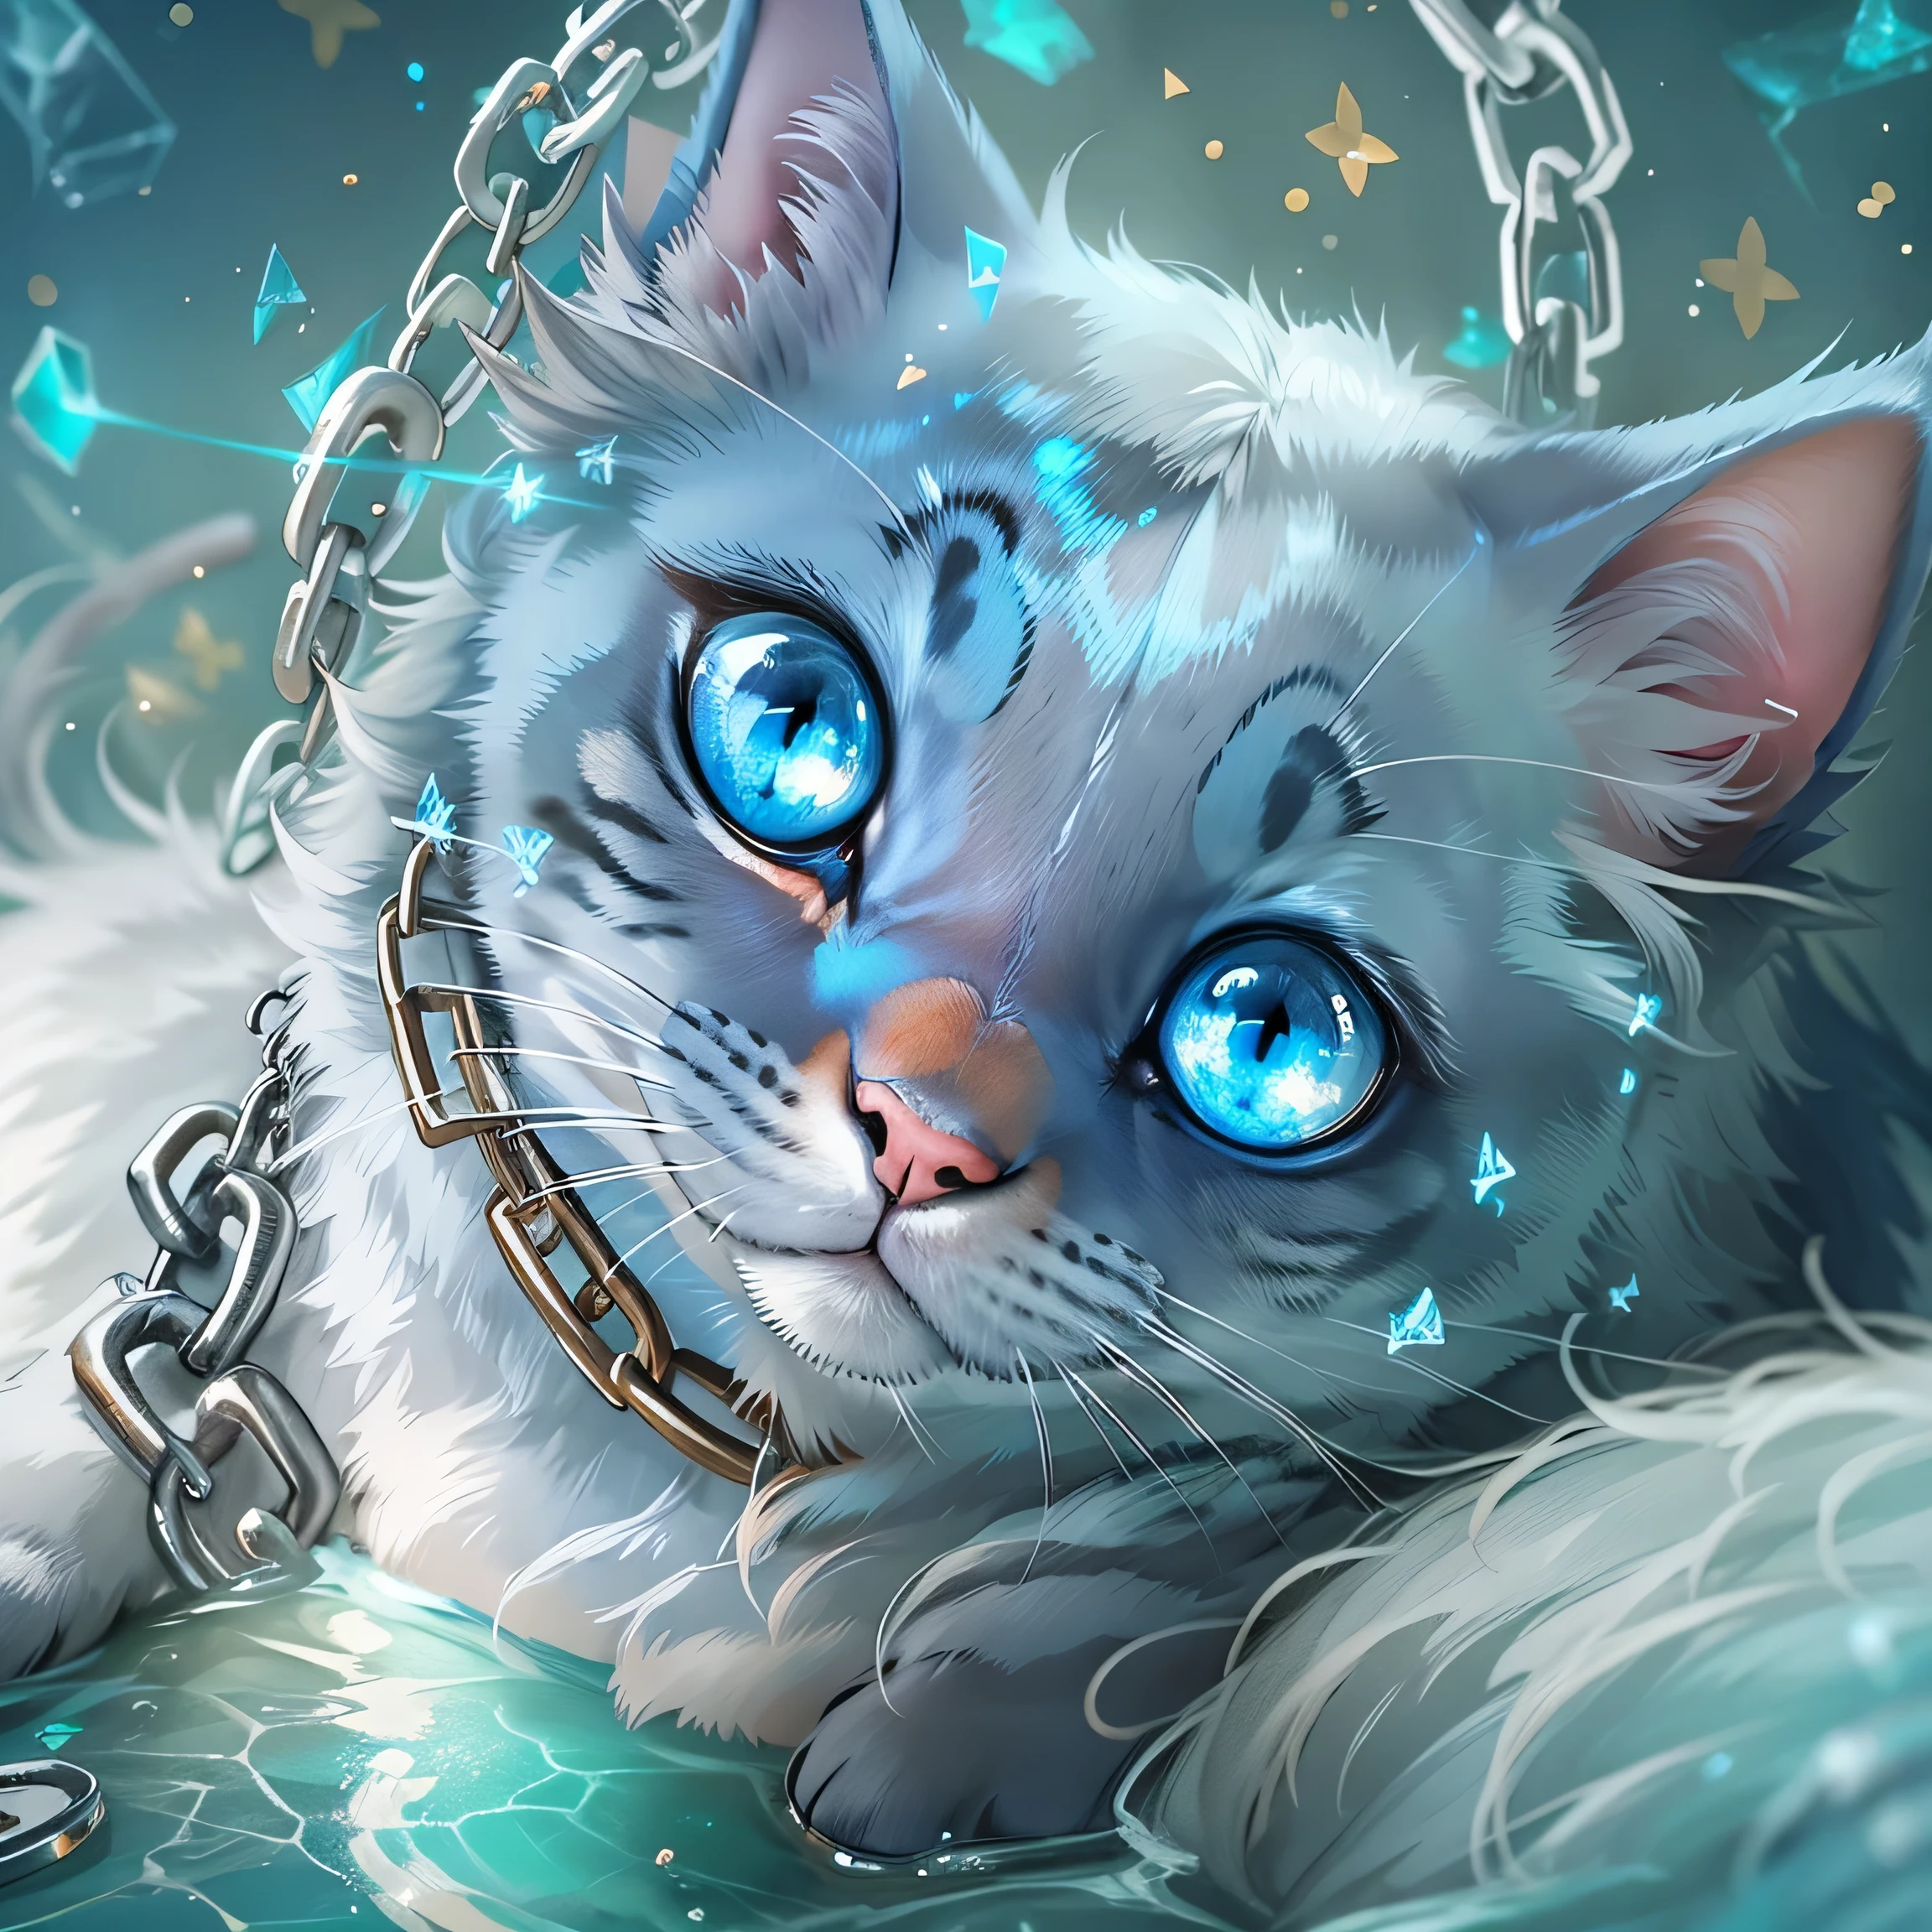 파란 눈을 가진 고양이가 있고 목에 사슬이 감겨 있어요., 디지털 아트 by Galen Dara, CGSociety에서 인기, 디지털 아트, 파랗게 빛나는 눈, beautiful 빛나는 파란 눈, 파랗게 빛나는 눈, 반짝이는 파란 눈, 빛나는 파란 눈, 반짝이는 파란 눈, 파란색 반사 눈, 꿈의 동물의 귀여운 눈, 크리스탈 블루 눈, 얼음 파란 눈